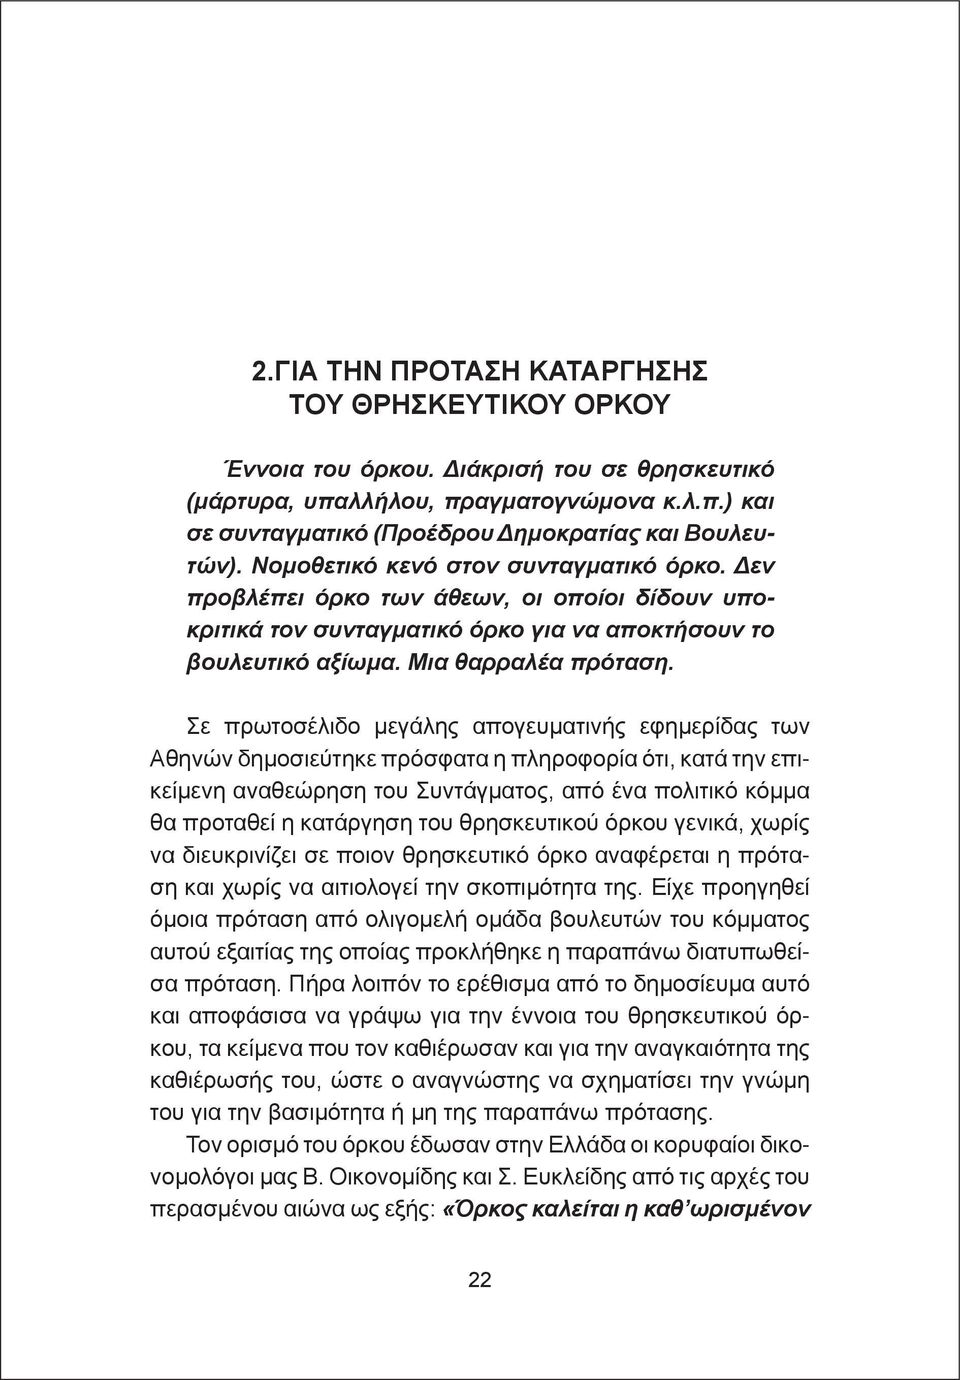 Σε πρωτοσέλιδο μεγάλης απογευματινής εφημερίδας των Αθηνών δημοσιεύτηκε πρόσφατα η πληροφορία ότι, κατά την επικείμενη αναθεώρηση του Συντάγματος, από ένα πολιτικό κόμμα θα προταθεί η κατάργηση του